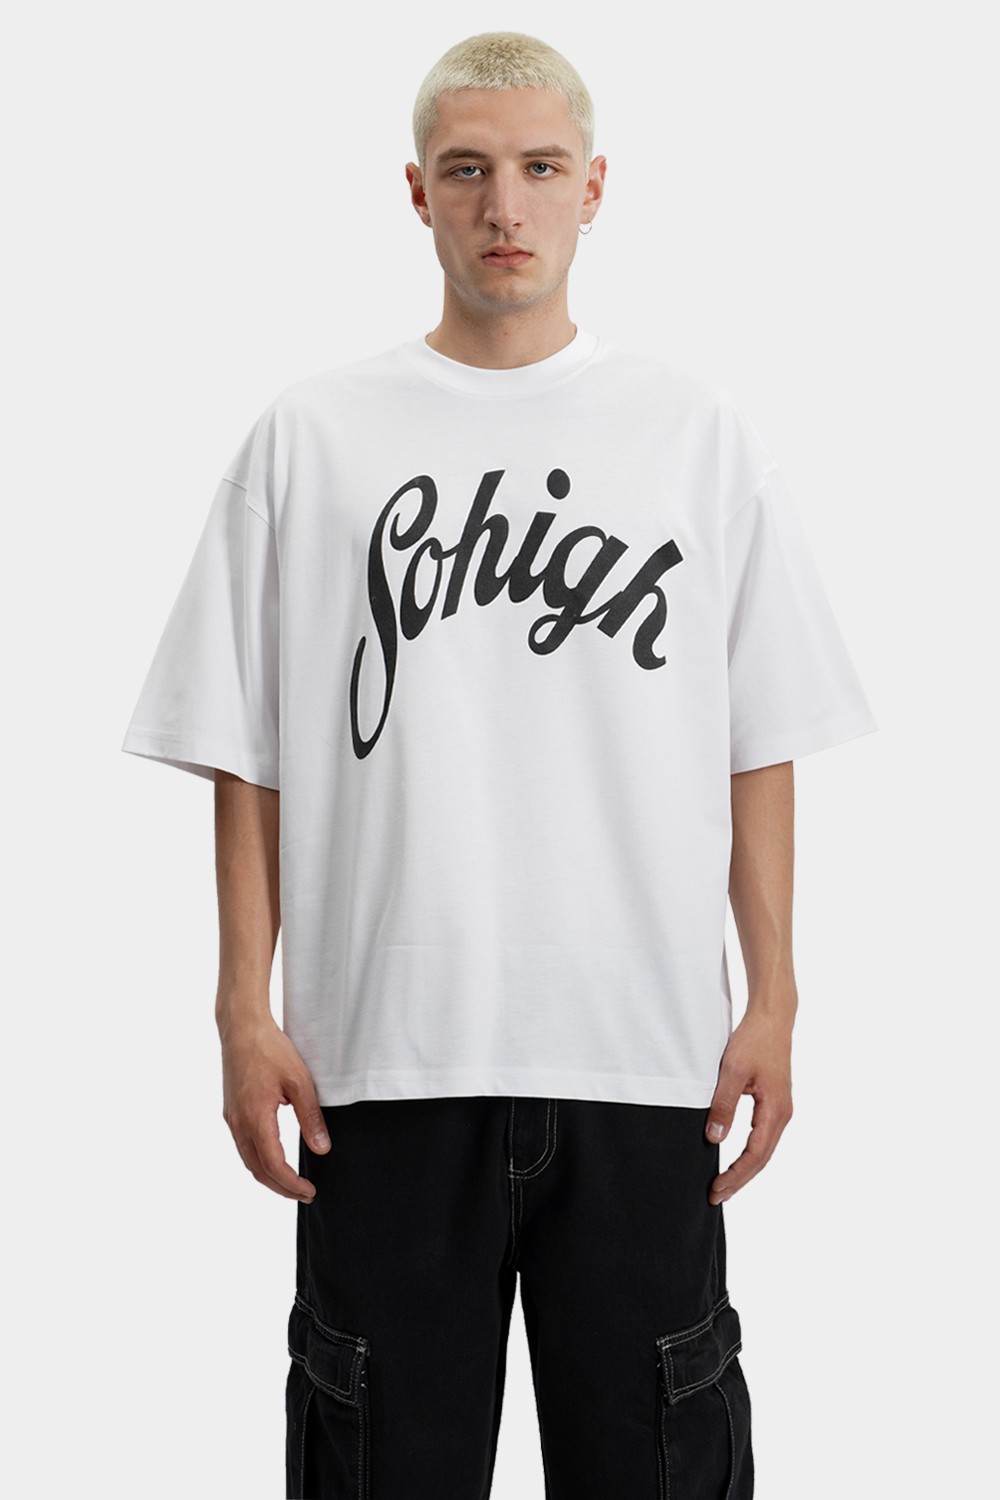 Sohigh Puffer Curse Logo T-Shirt (SHT-14)